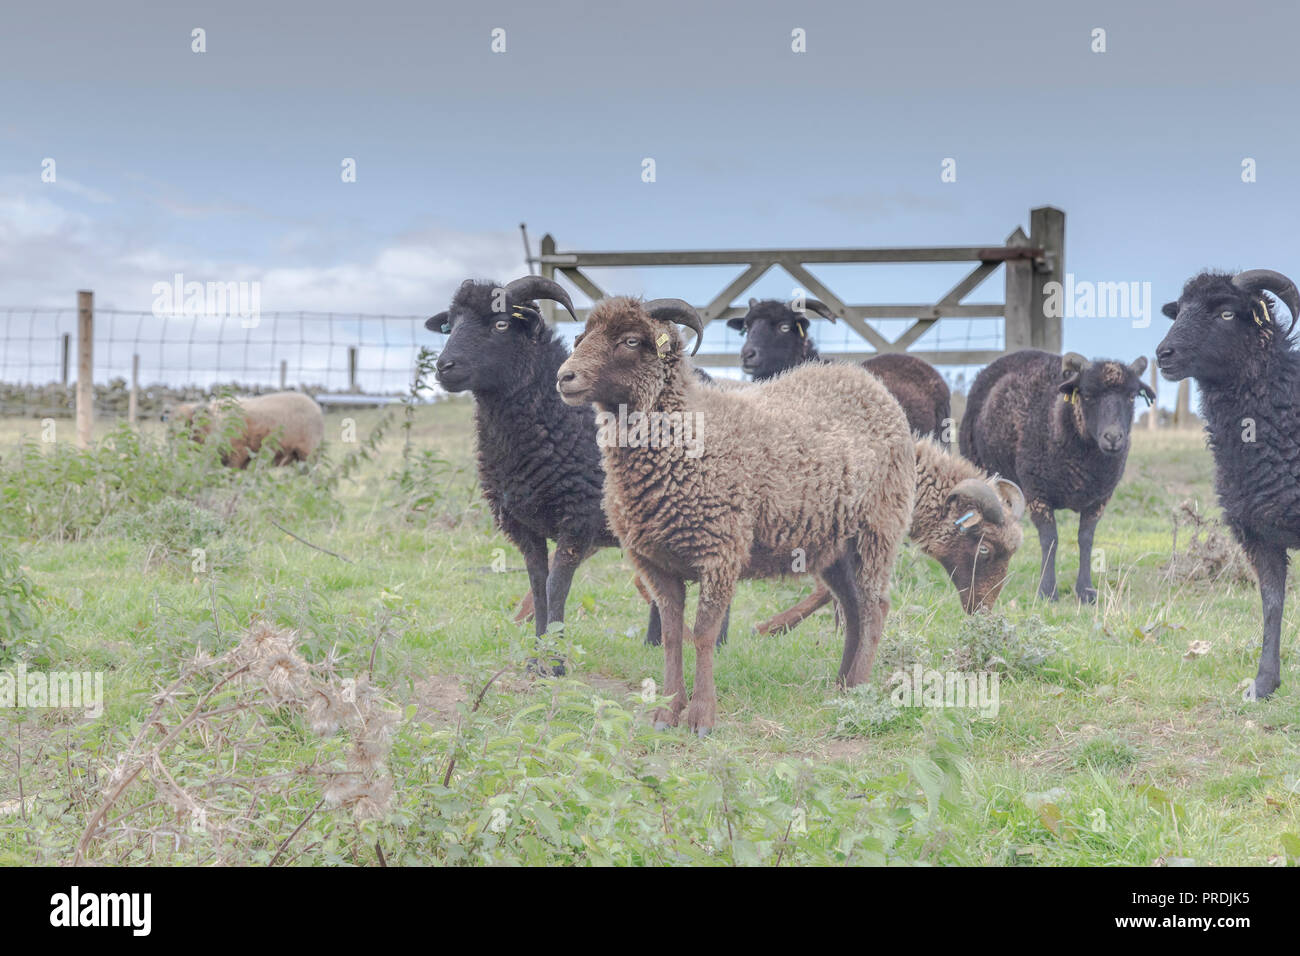 Moutons d'Ouessant, une race de moutons du patrimoine originaire de l'île d'Ouessant en Bretagne. Banque D'Images